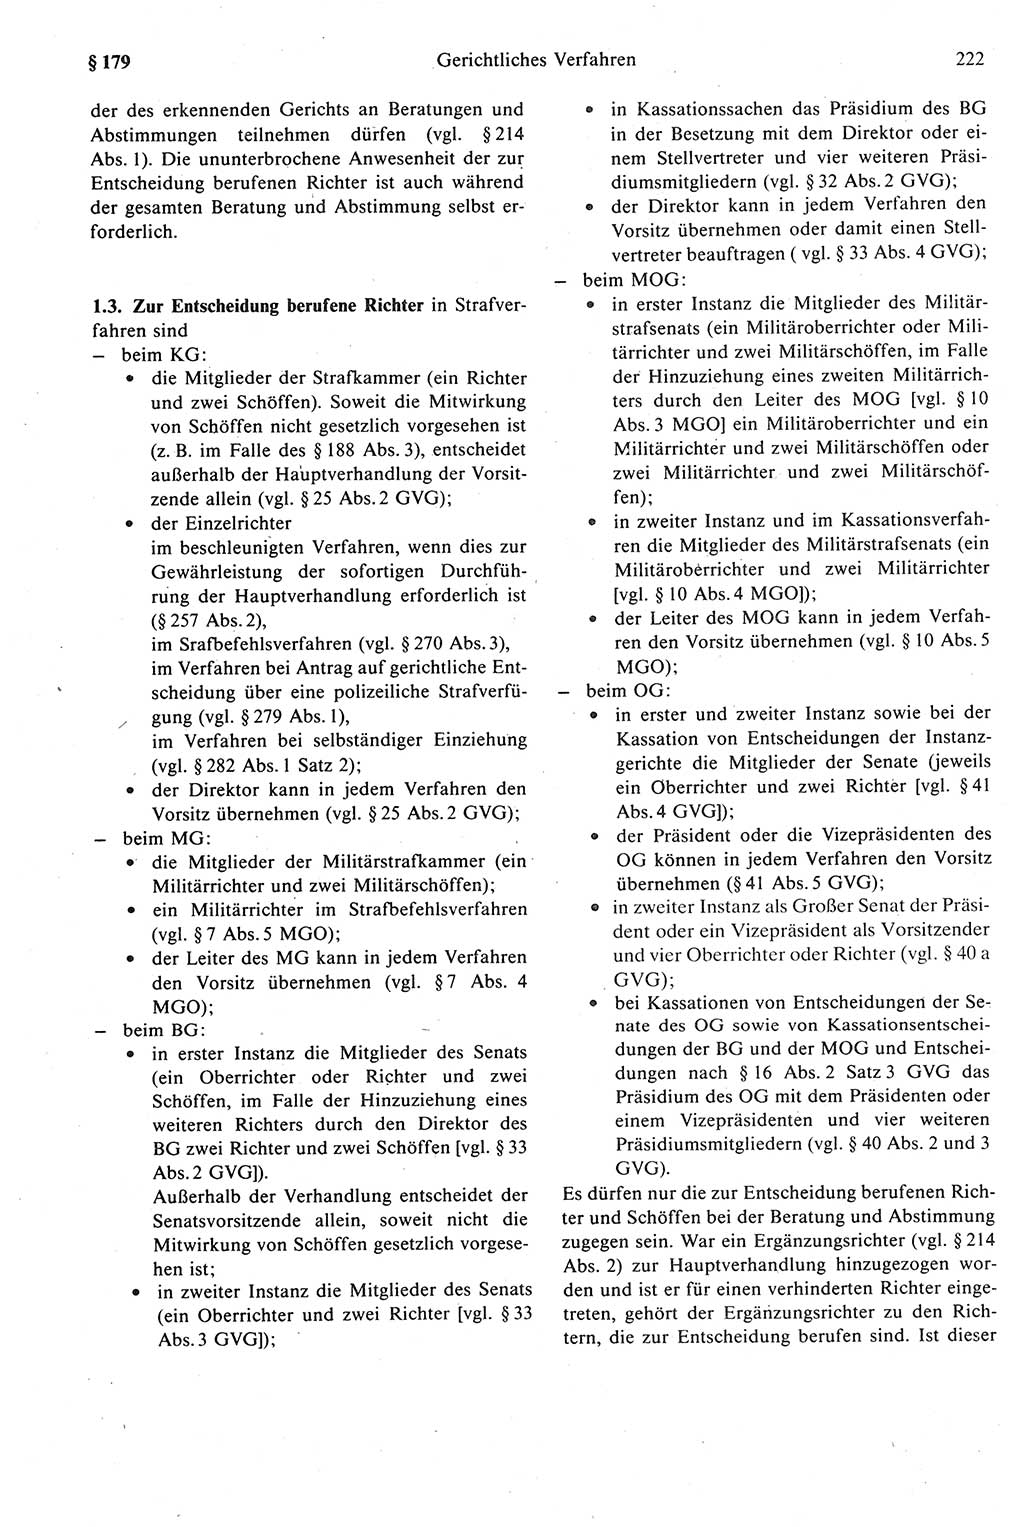 Strafprozeßrecht der DDR (Deutsche Demokratische Republik), Kommentar zur Strafprozeßordnung (StPO) 1989, Seite 222 (Strafprozeßr. DDR Komm. StPO 1989, S. 222)